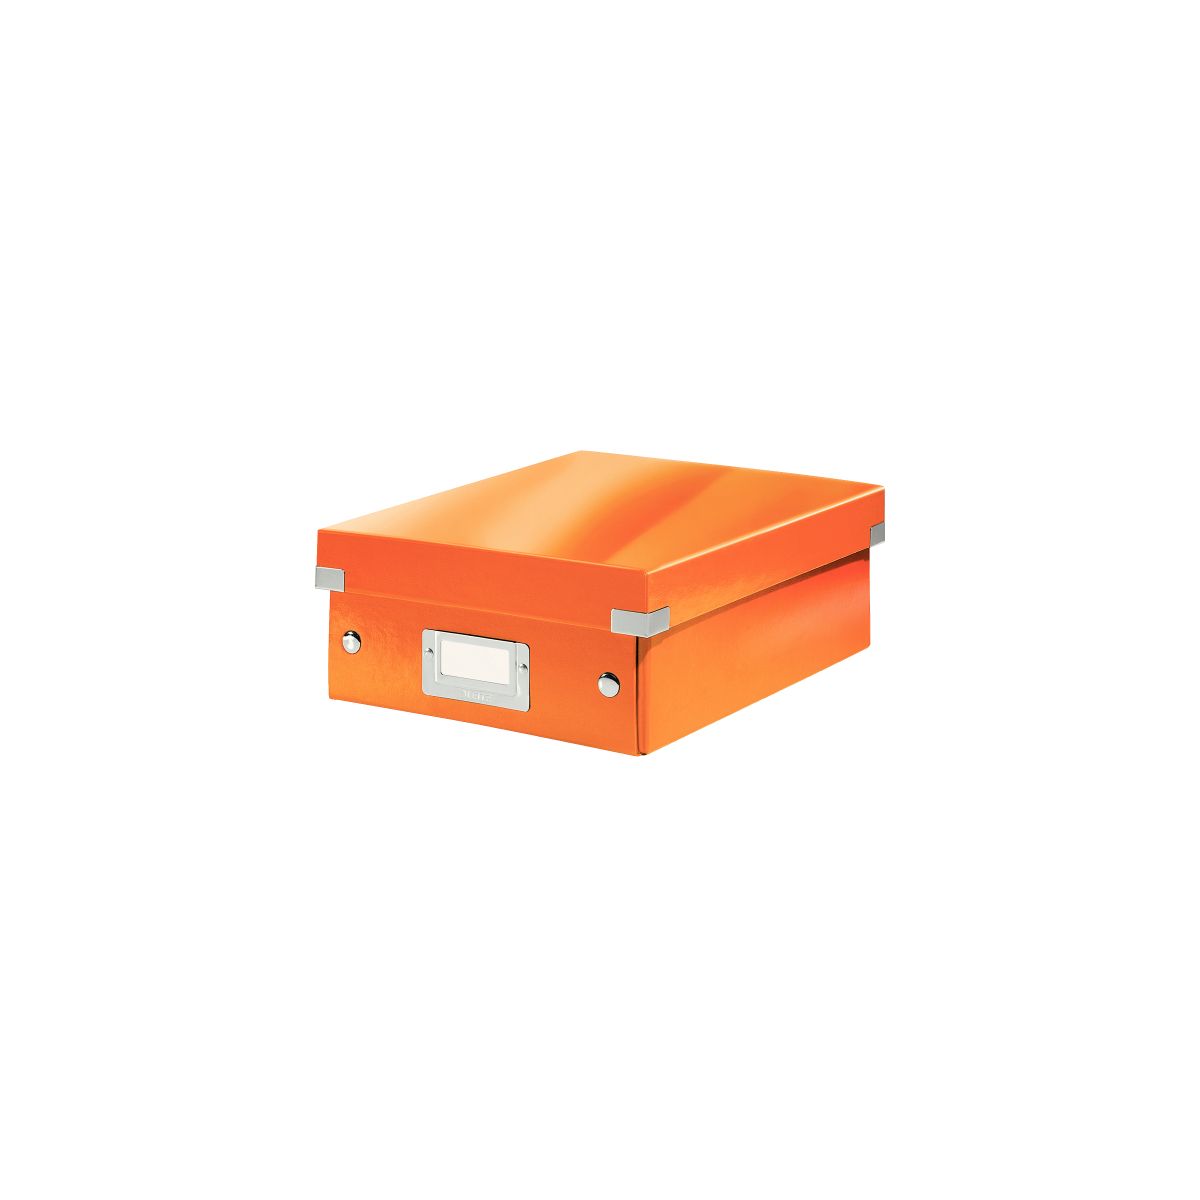 Pudło archiwizacyjne Click & Store z przegródkami pomarańczowy karton [mm:] 220x100x 285 Leitz (60570044)